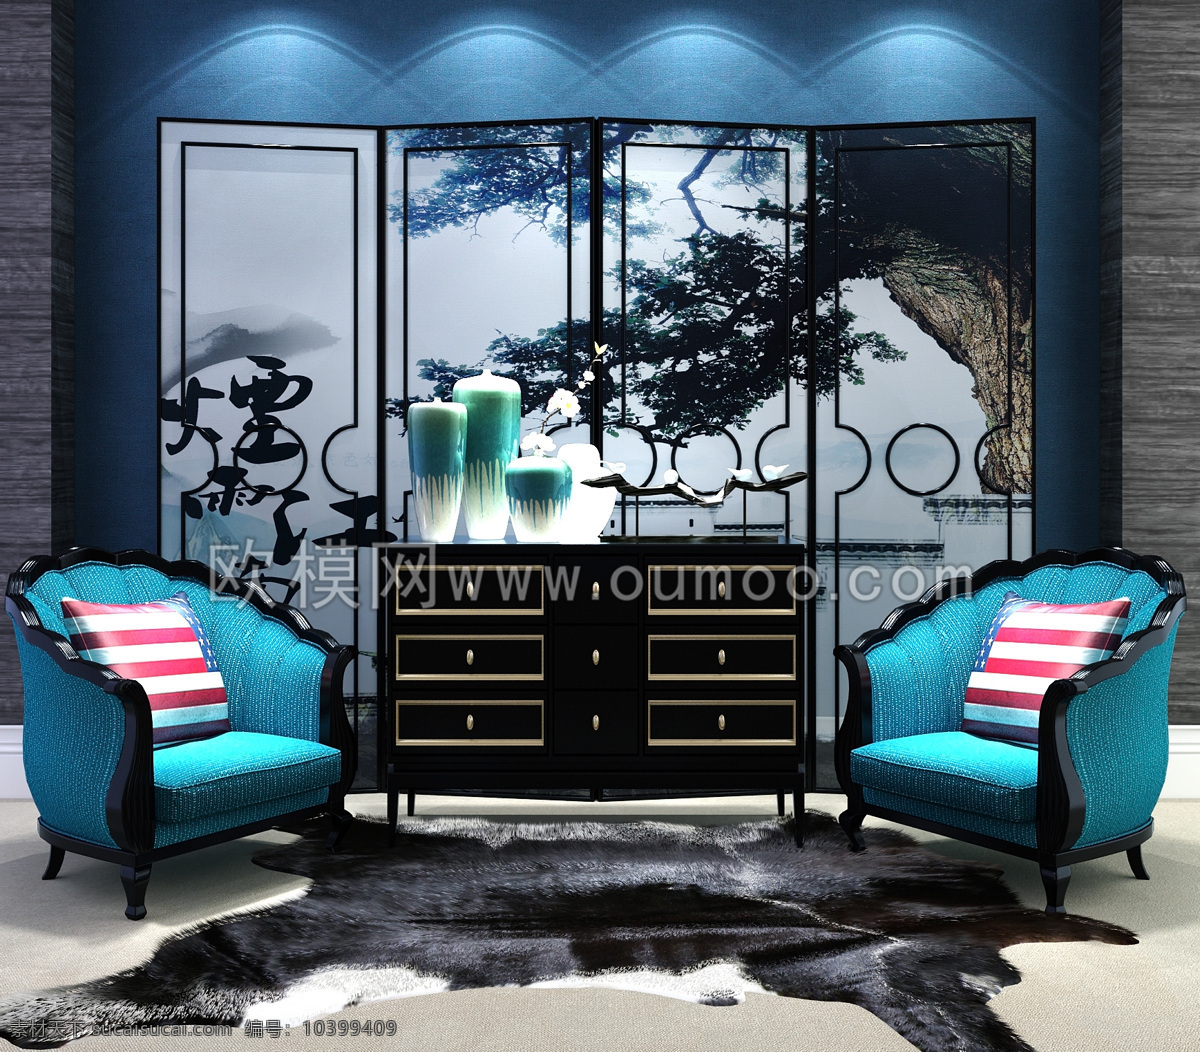 现代 中式 沙发椅 玄关 柜 屏风 饰品 组合 蓝色 3d模型 效果图 边柜 3d渲染 家具模型